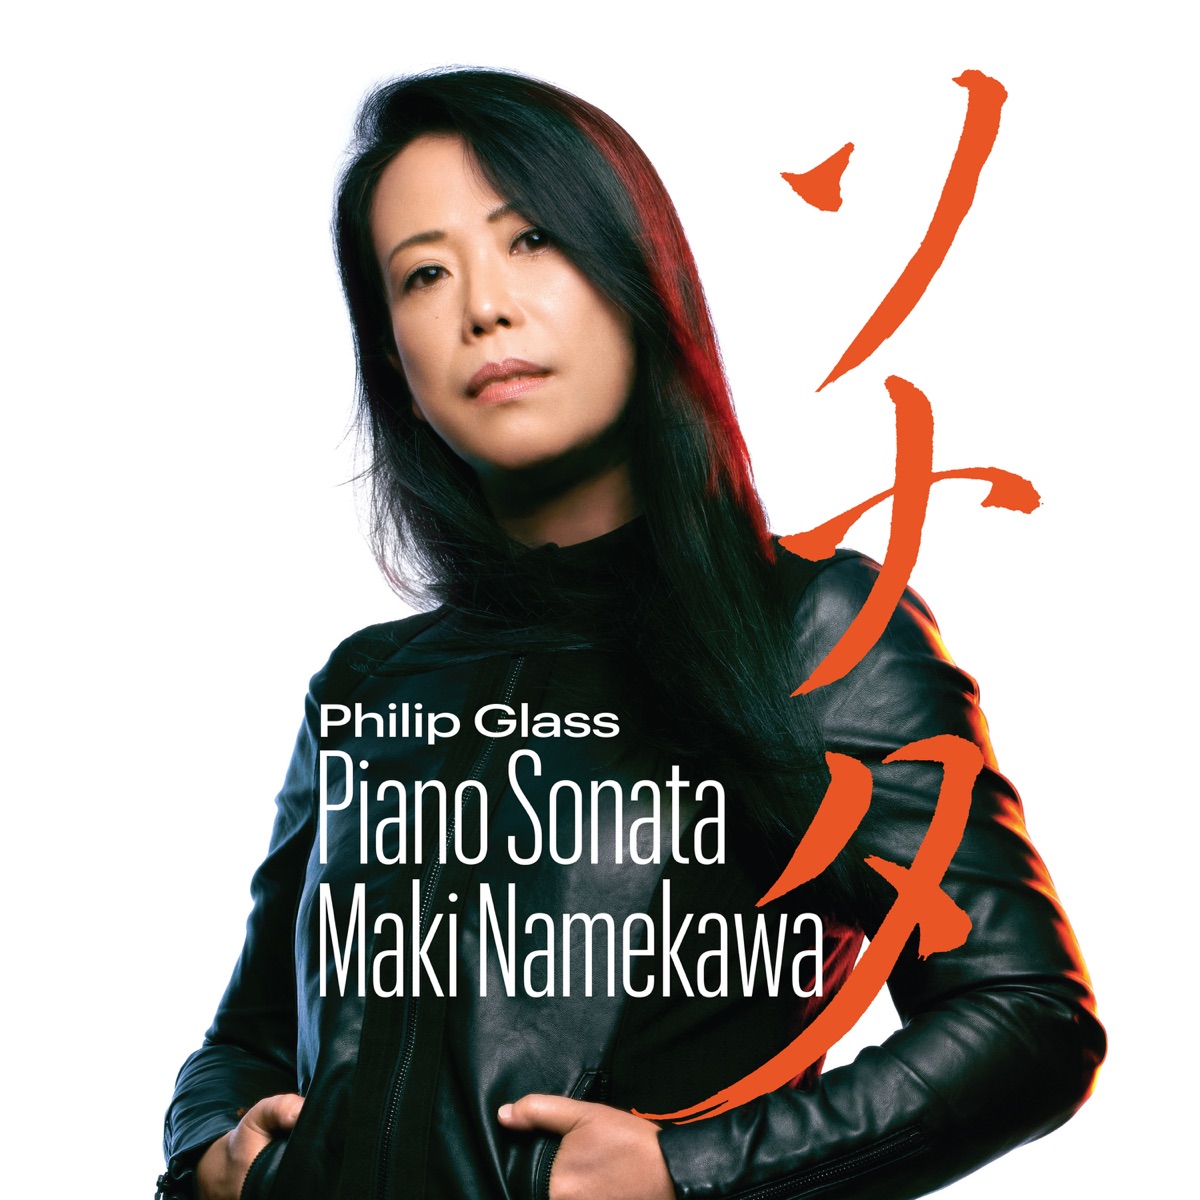 Philip Glass: Piano Sonata by Maki Namekawa on Apple Music